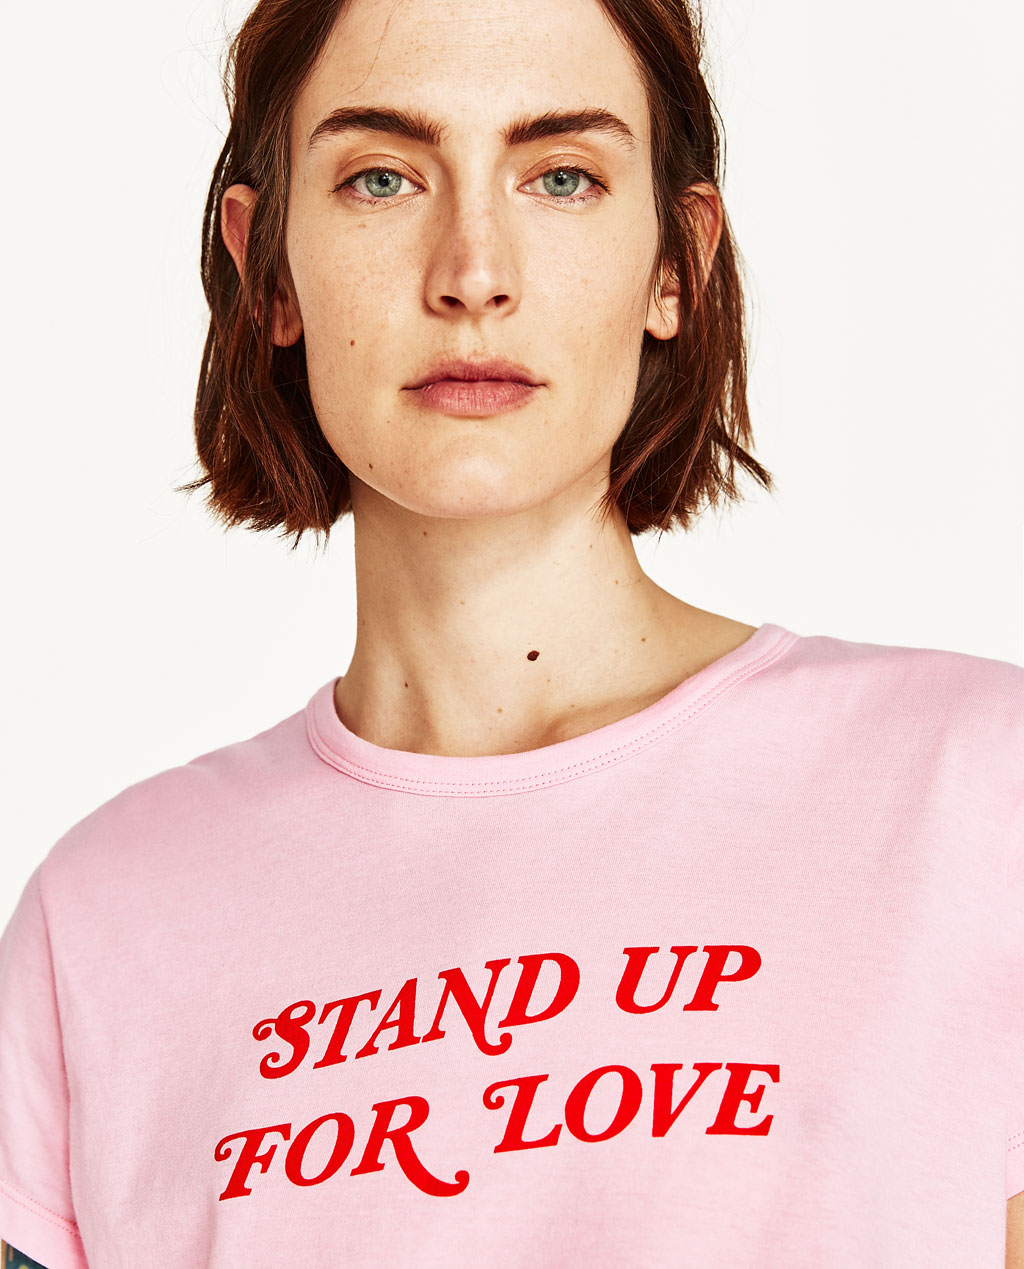 08-t-shirt-feministe-folkr-stand-up-for-love-zara